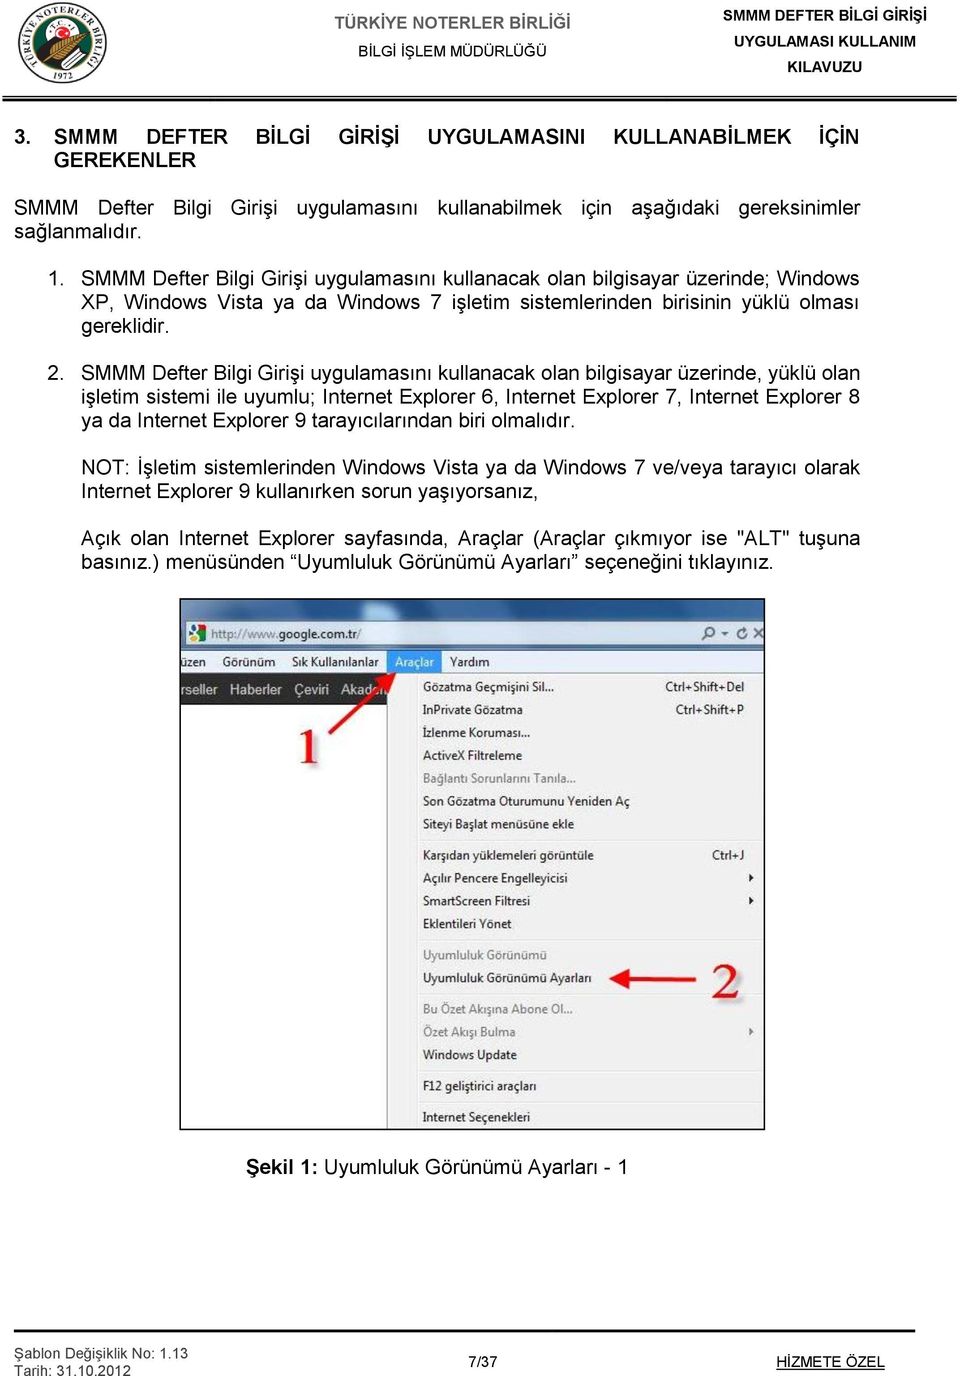 SMMM Defter Bilgi Girişi uygulamasını kullanacak olan bilgisayar üzerinde, yüklü olan işletim sistemi ile uyumlu; Internet Explorer 6, Internet Explorer 7, Internet Explorer 8 ya da Internet Explorer